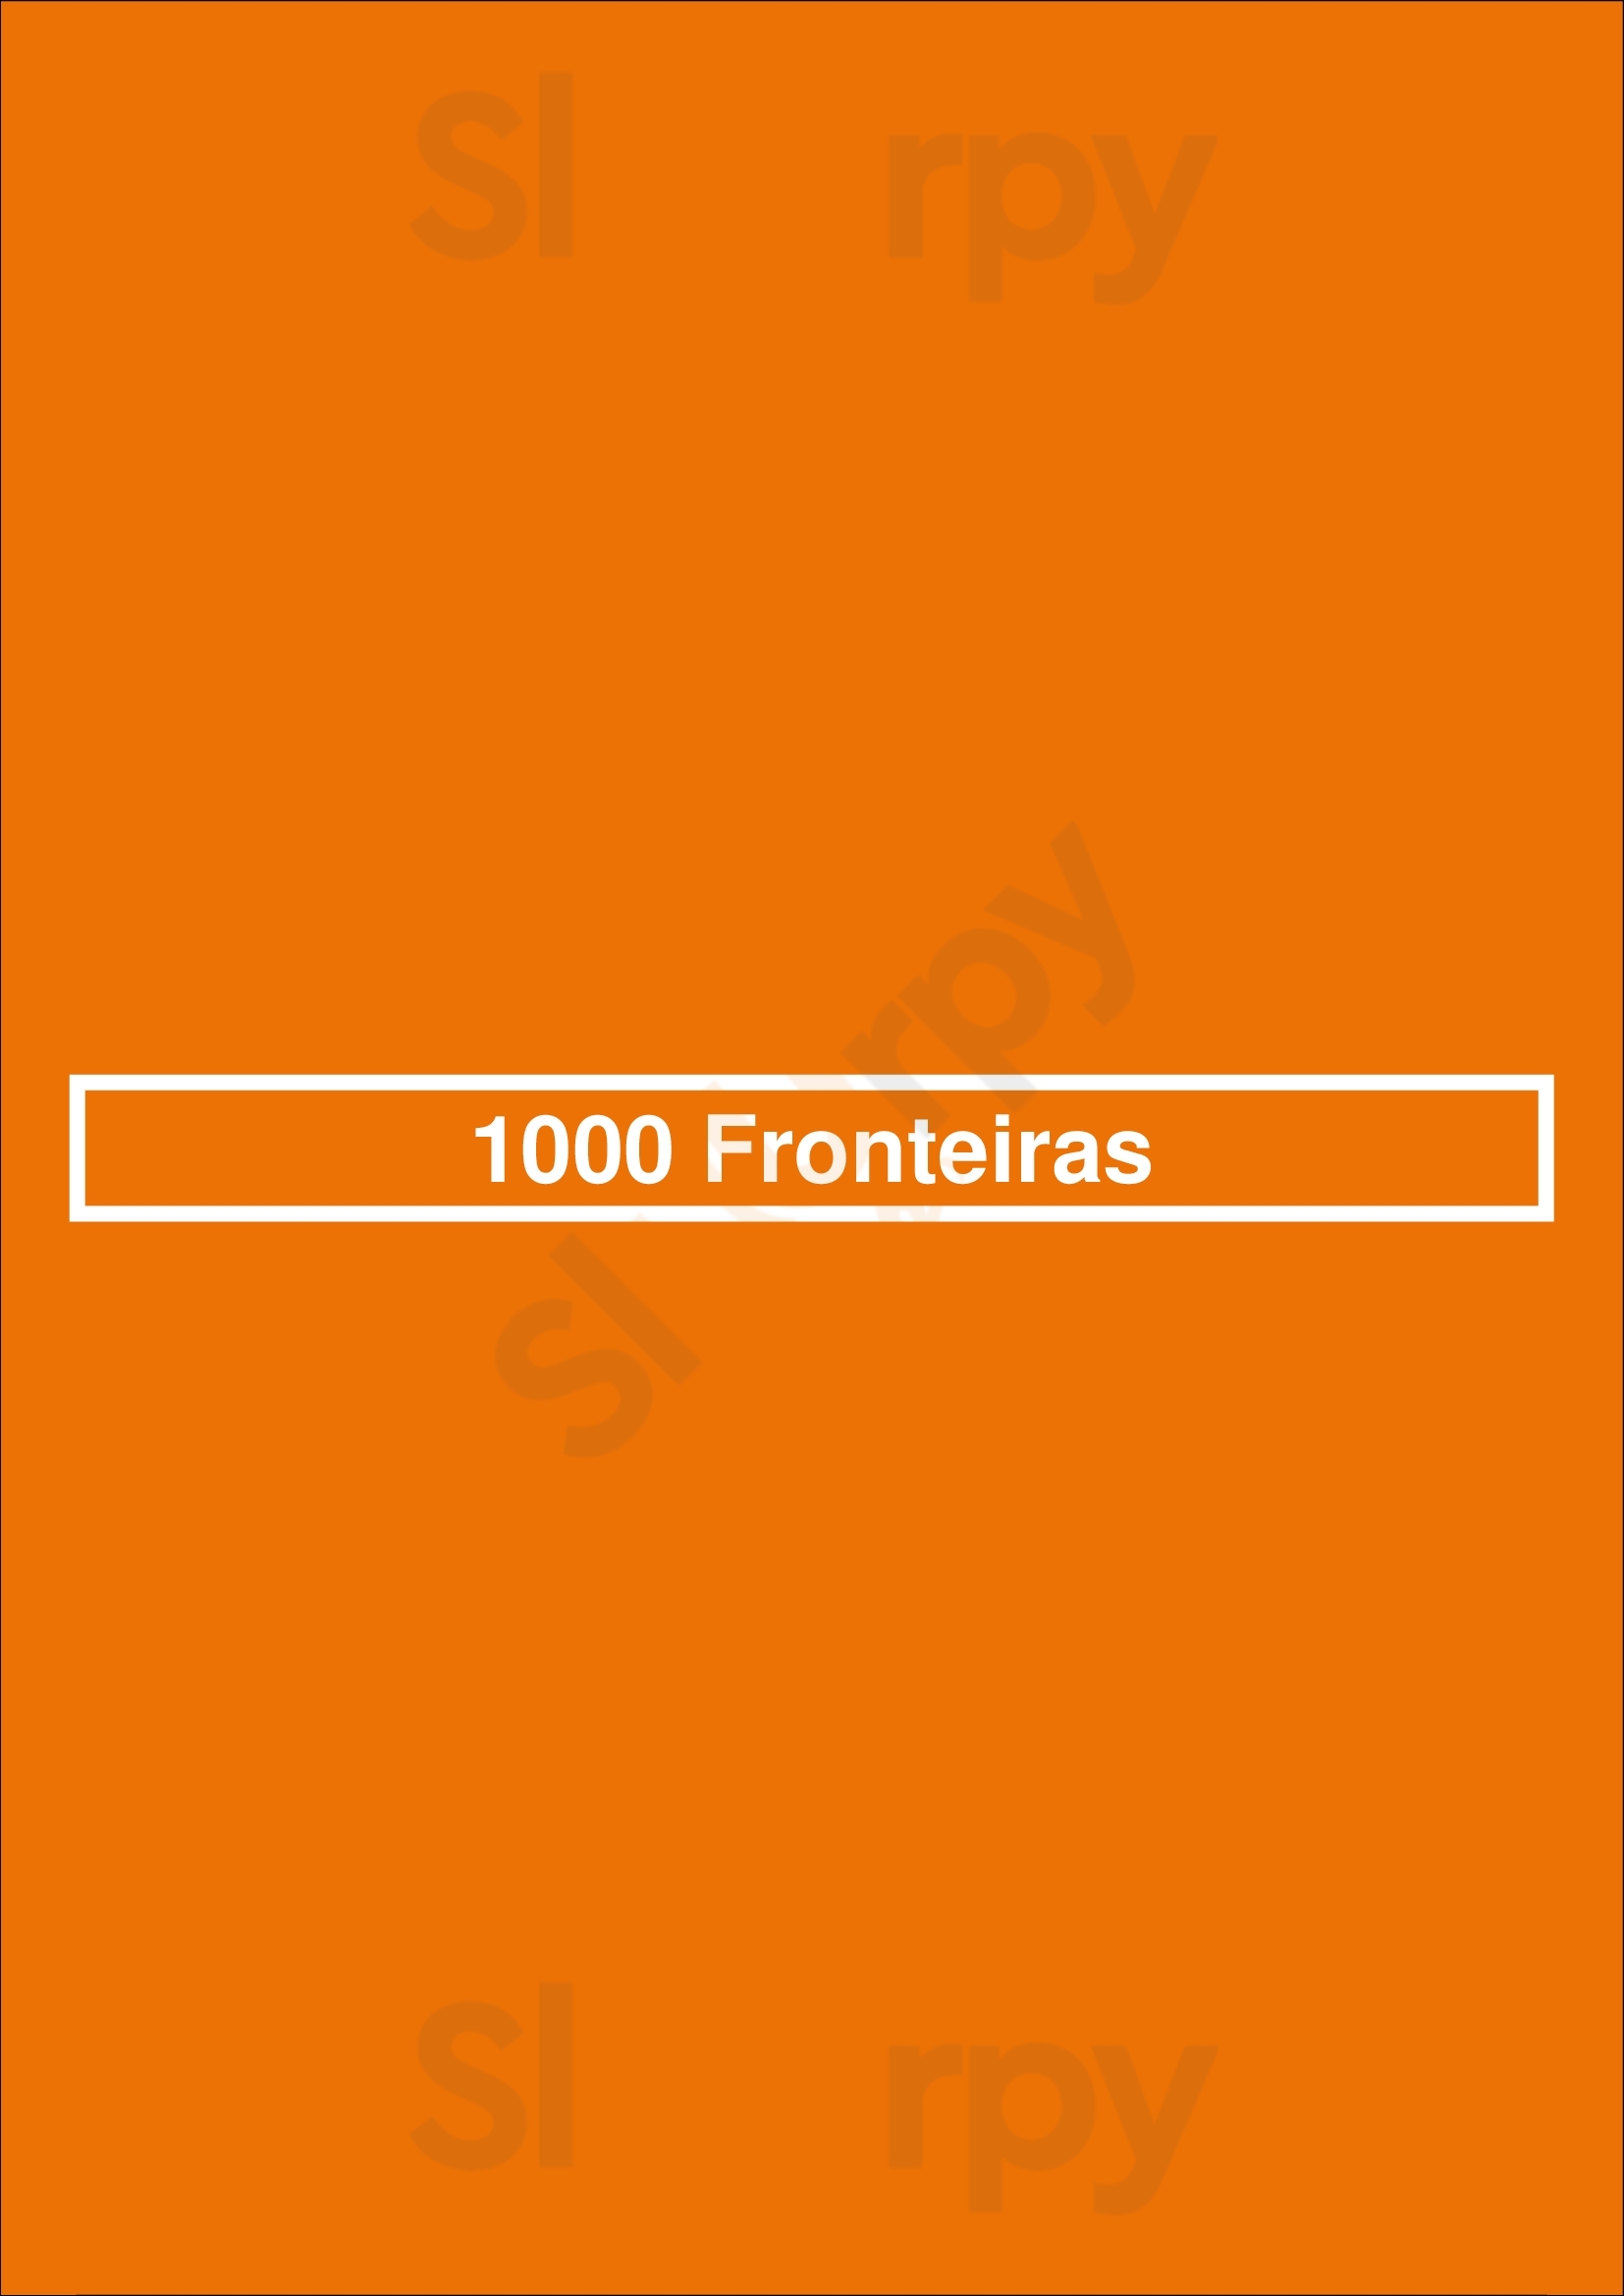 1000 Fronteiras Póvoa de Varzim Menu - 1